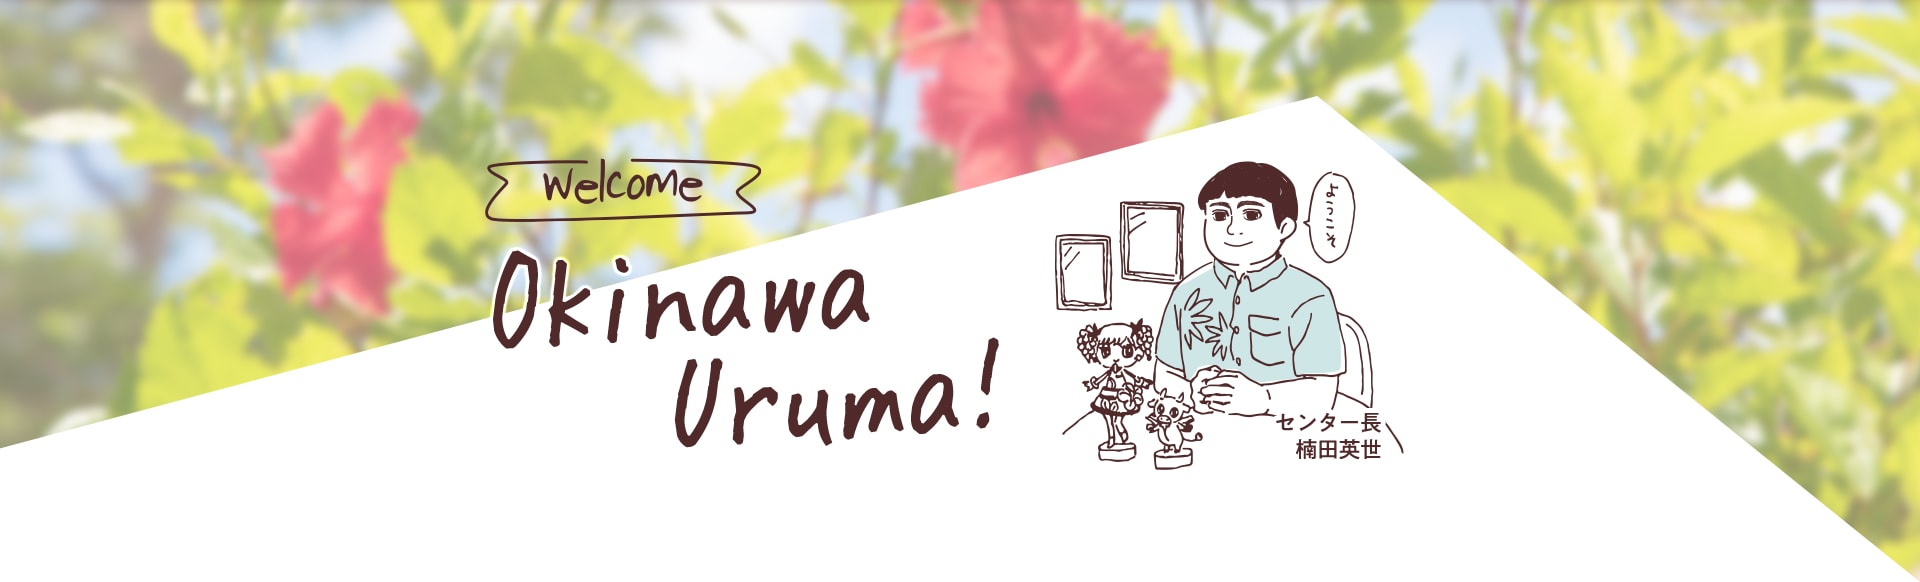 Welcome Okinawa Uruma!